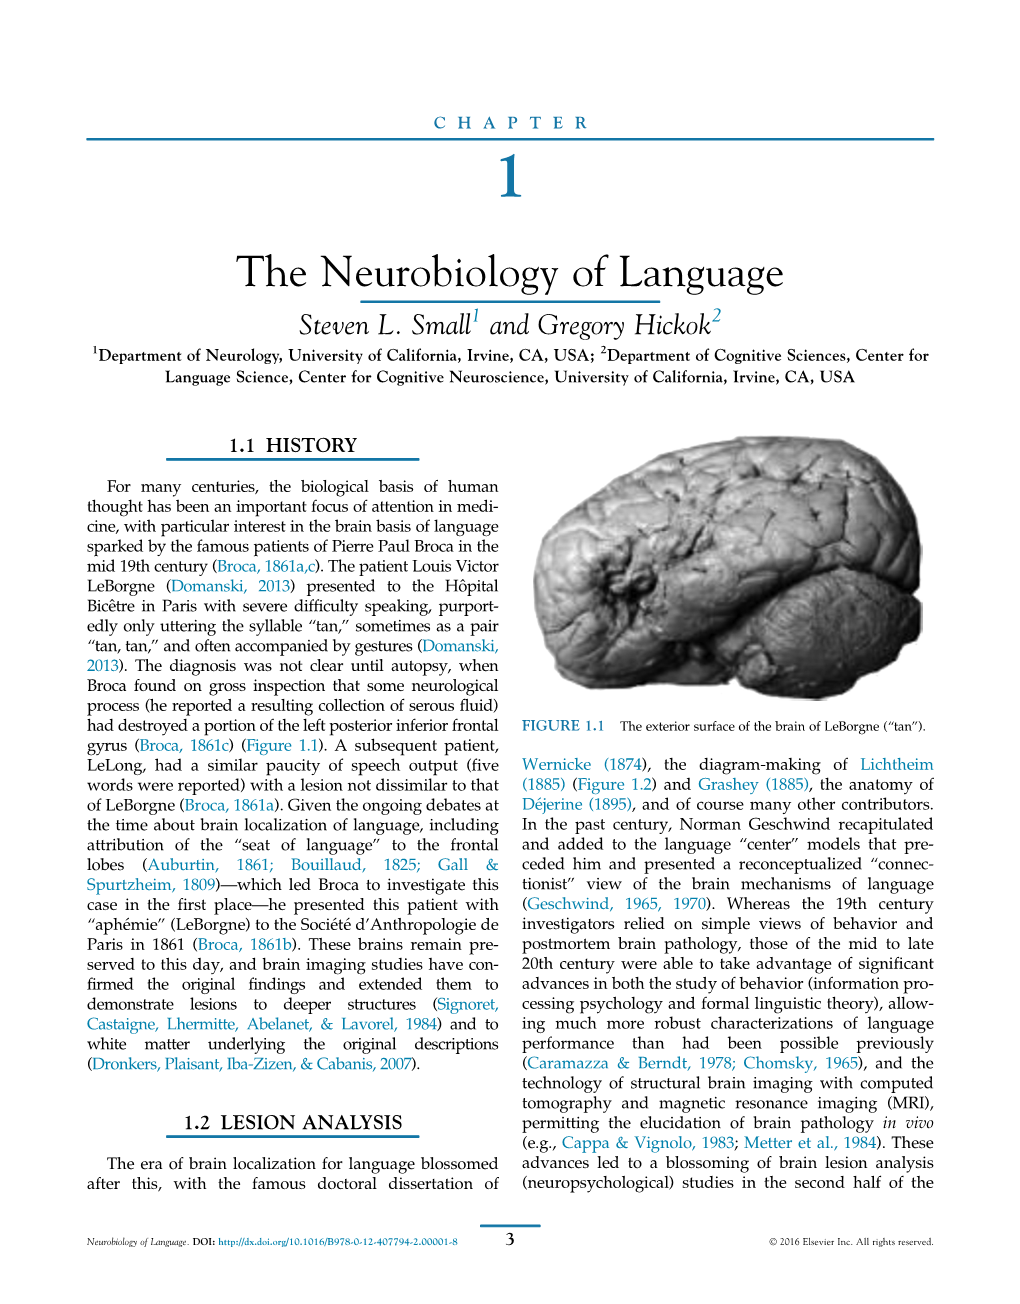 Neurobiology of Language Steven L